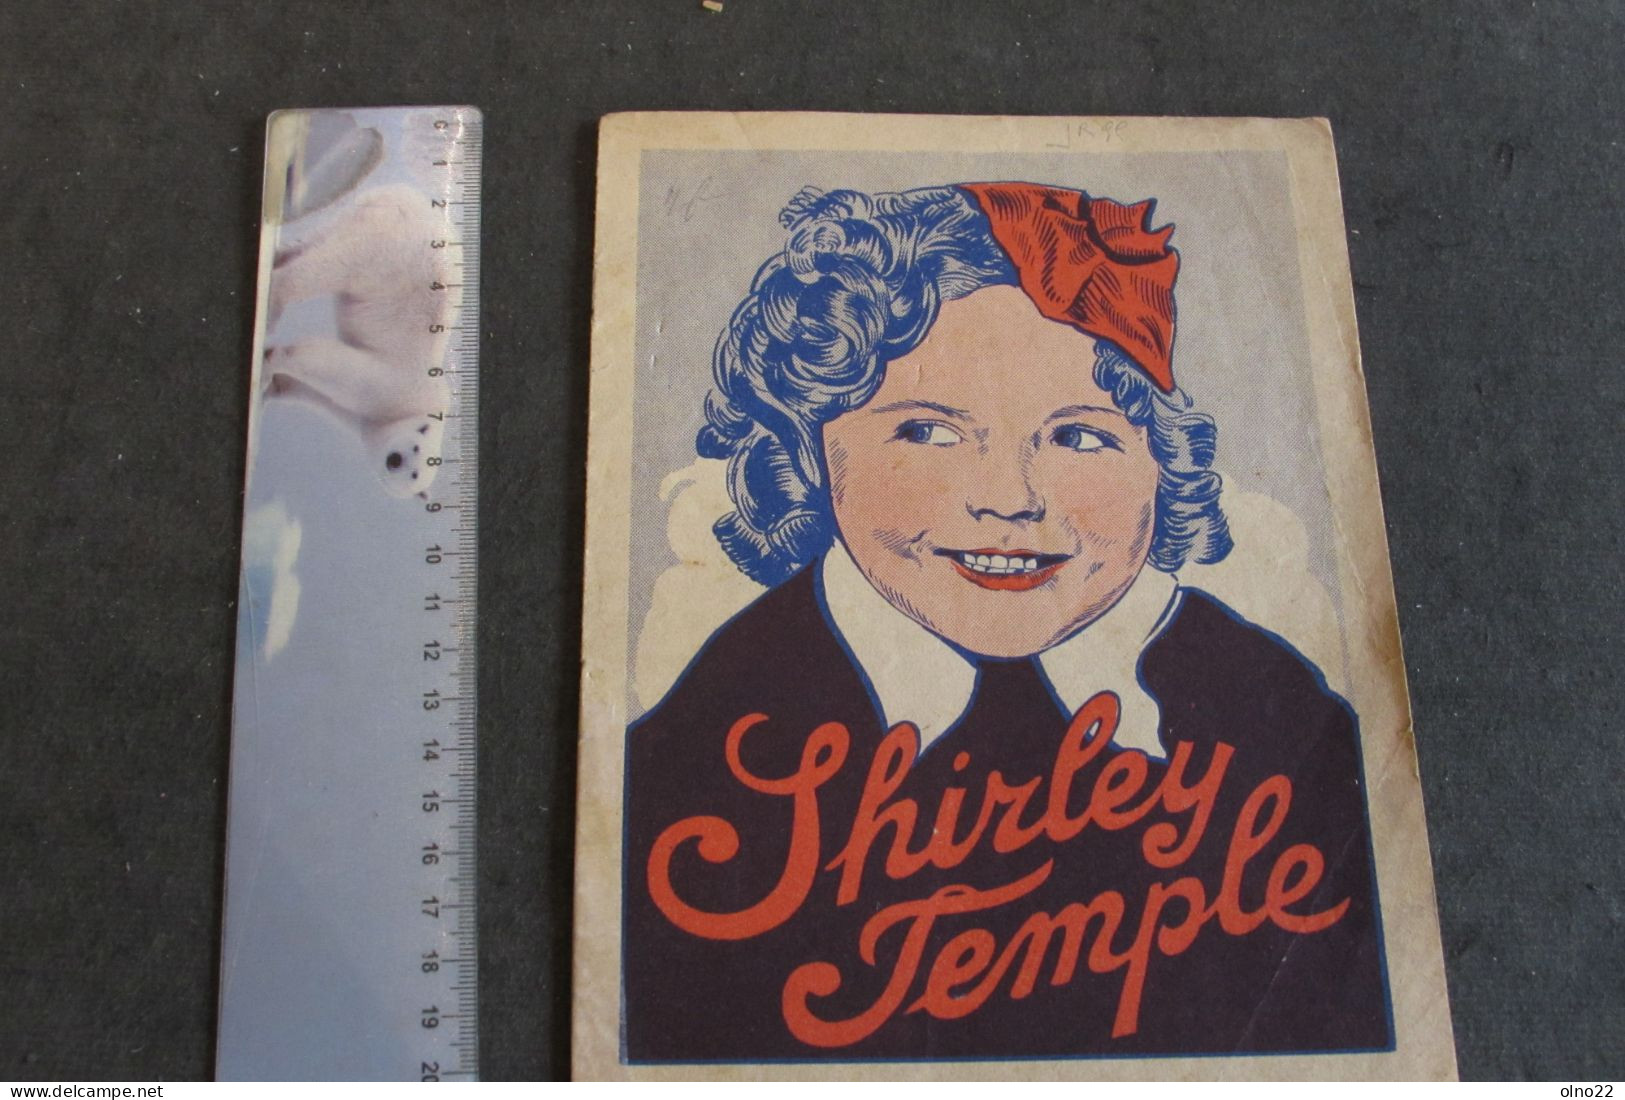 SHIRLEY TEMPLE - LIVRET PUBLICITAIRE VETEMENT A LA VIERGE NOIRE CHARLEROI -  4 FEUILLETS - VOIR SCANS - Advertising